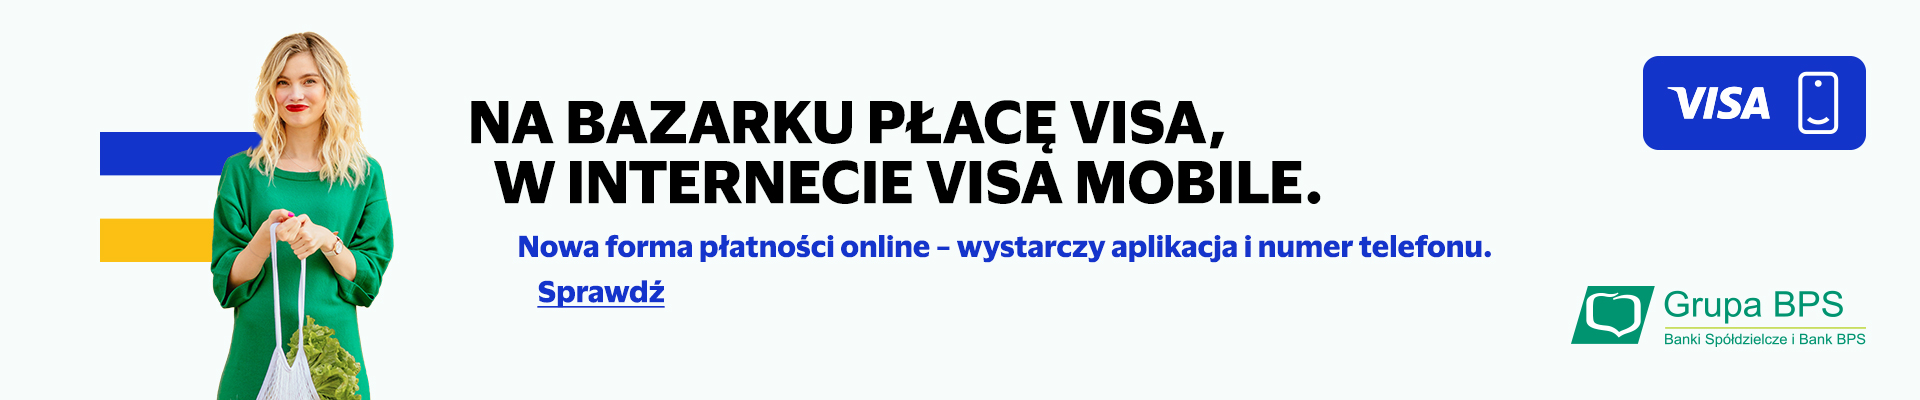 visa mobile bps banner 960x400 v1